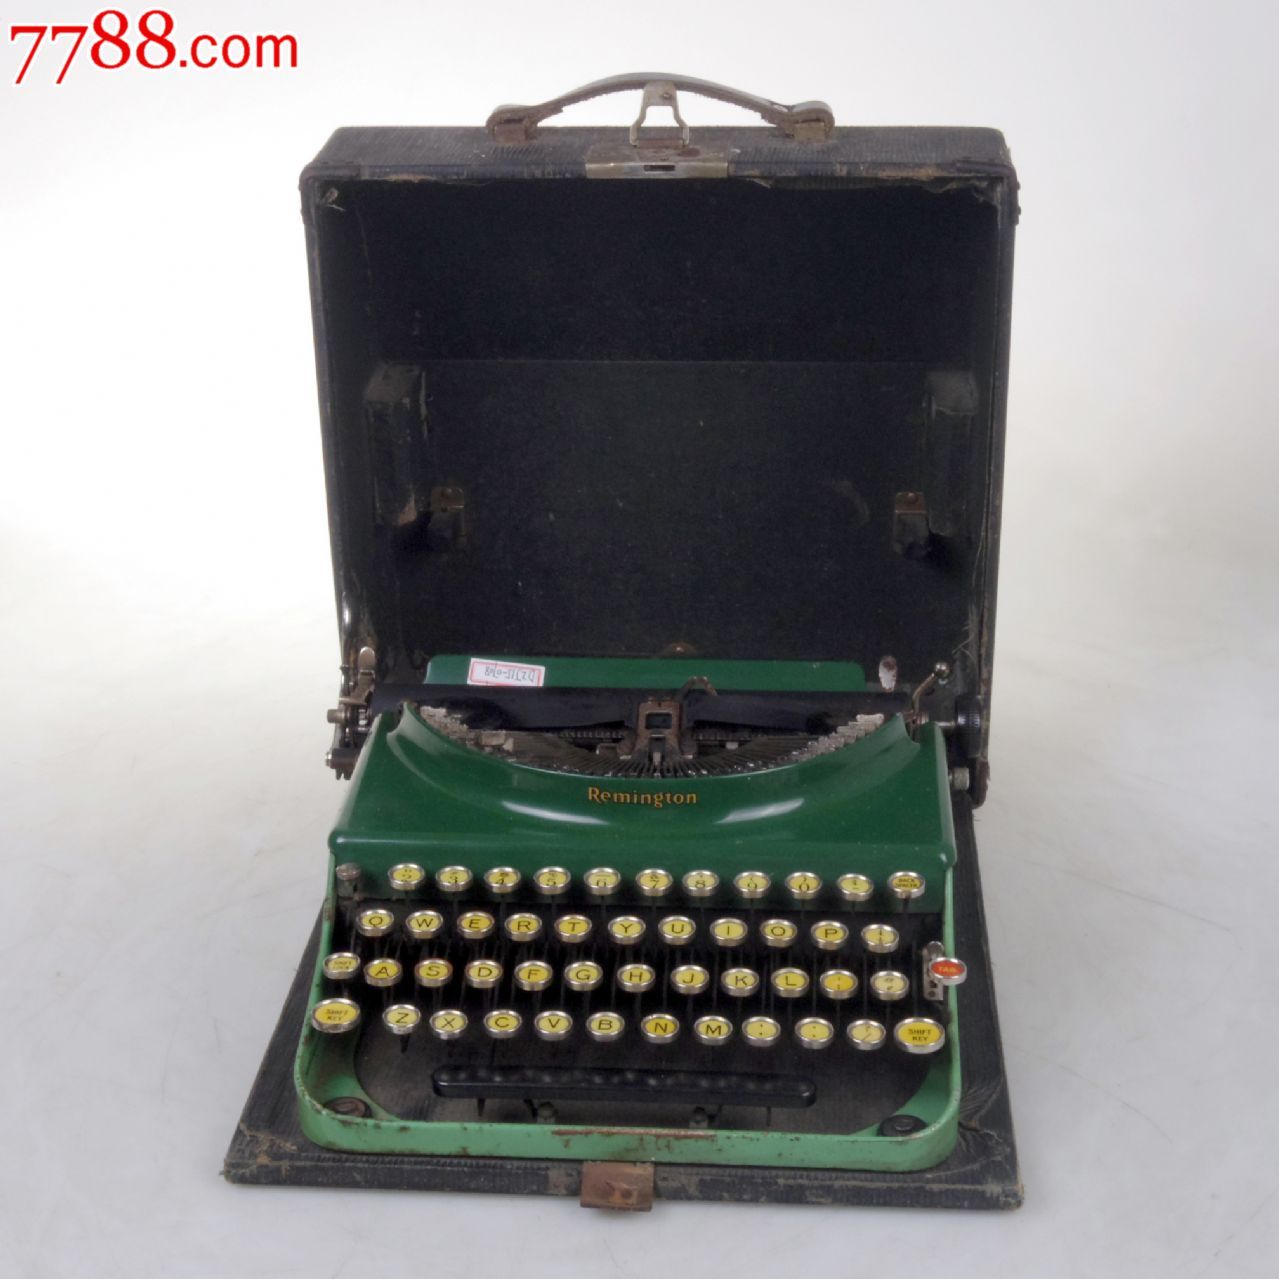 古董打字机雷明顿REMINGTON3机械英文打字